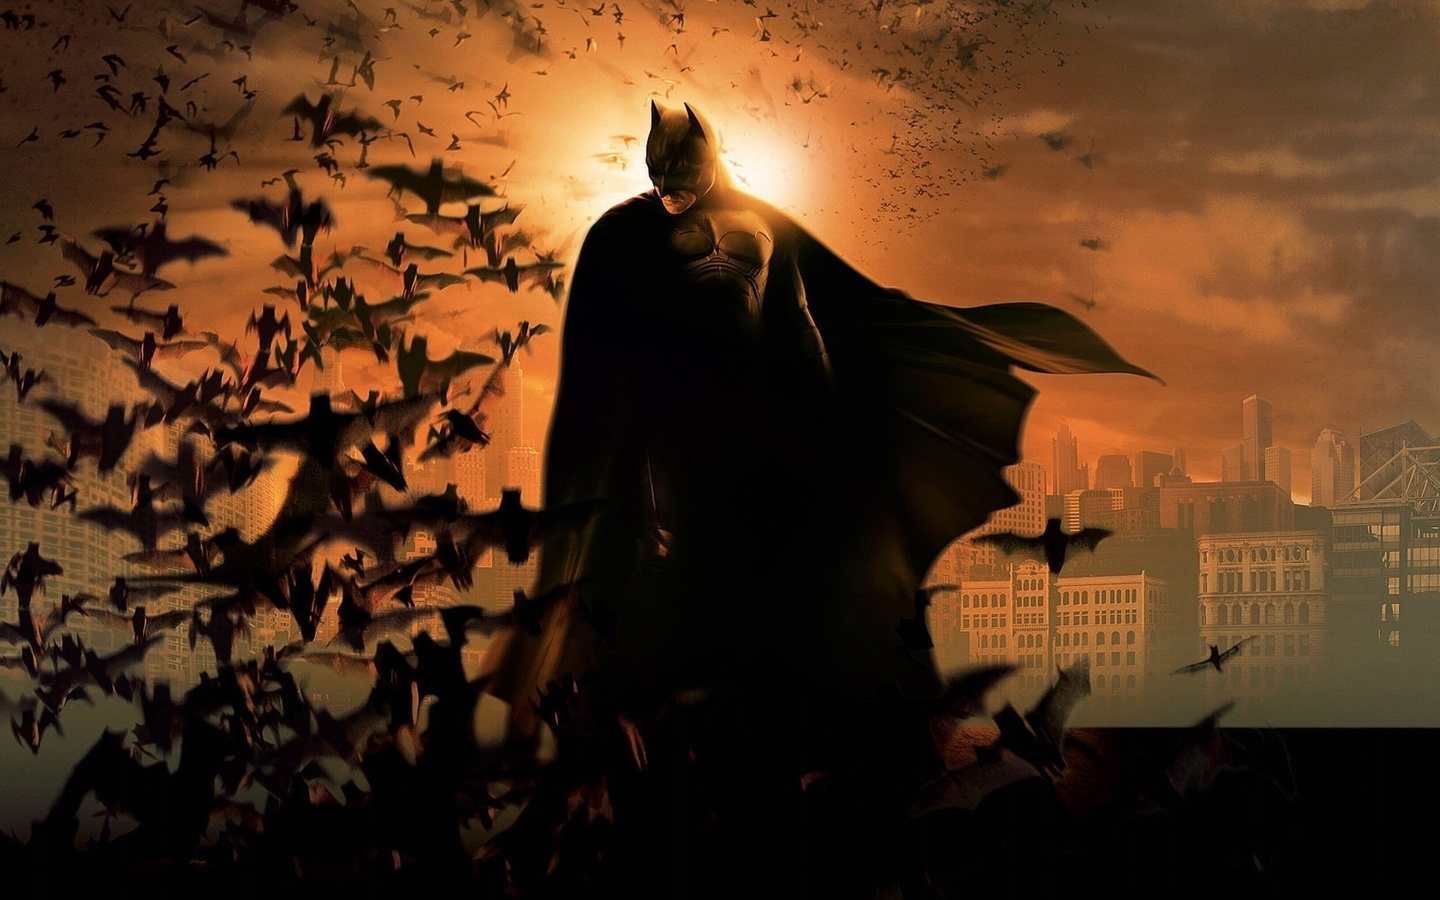   , , batman, The dark knight rises